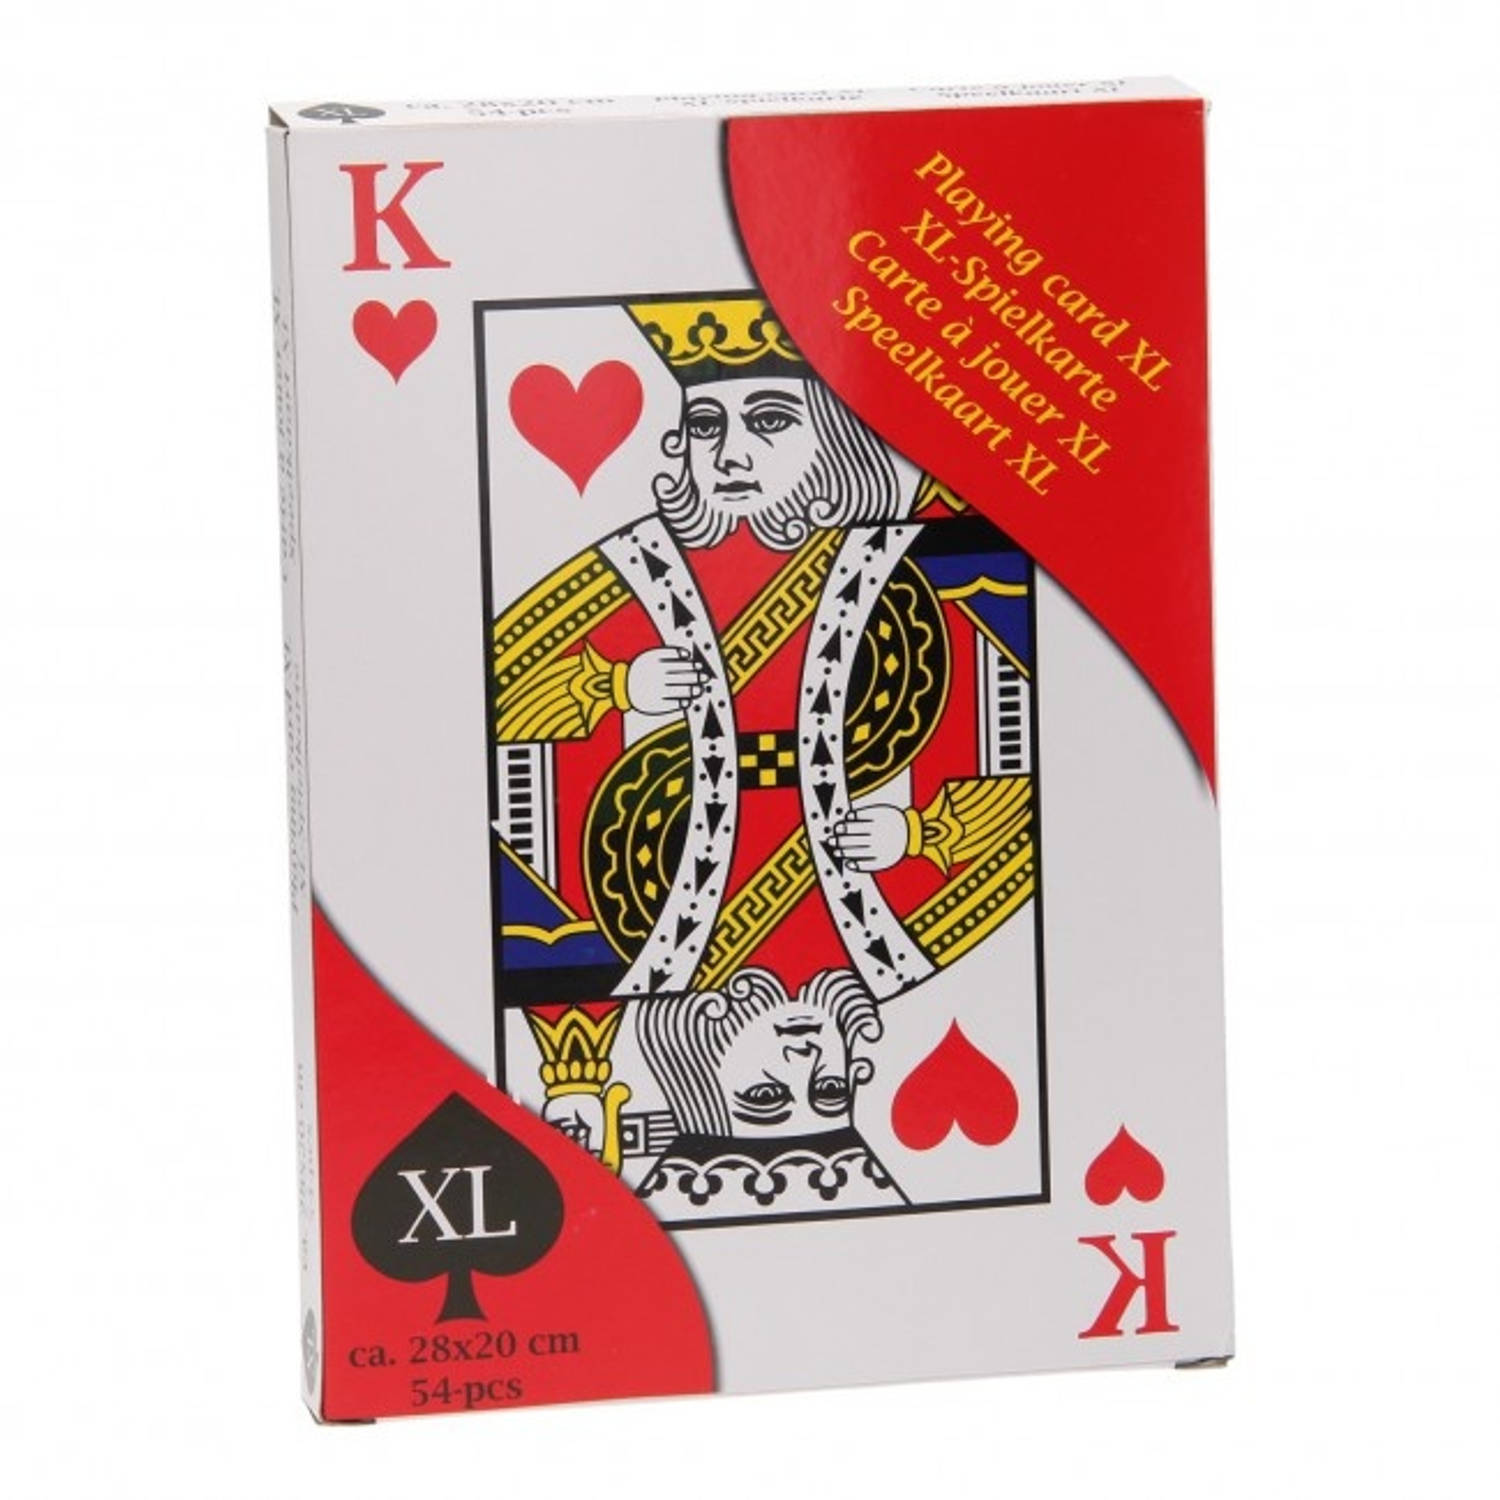 Eddy speelkaarten XL 28 x 20 cm 54 stuks | Blokker